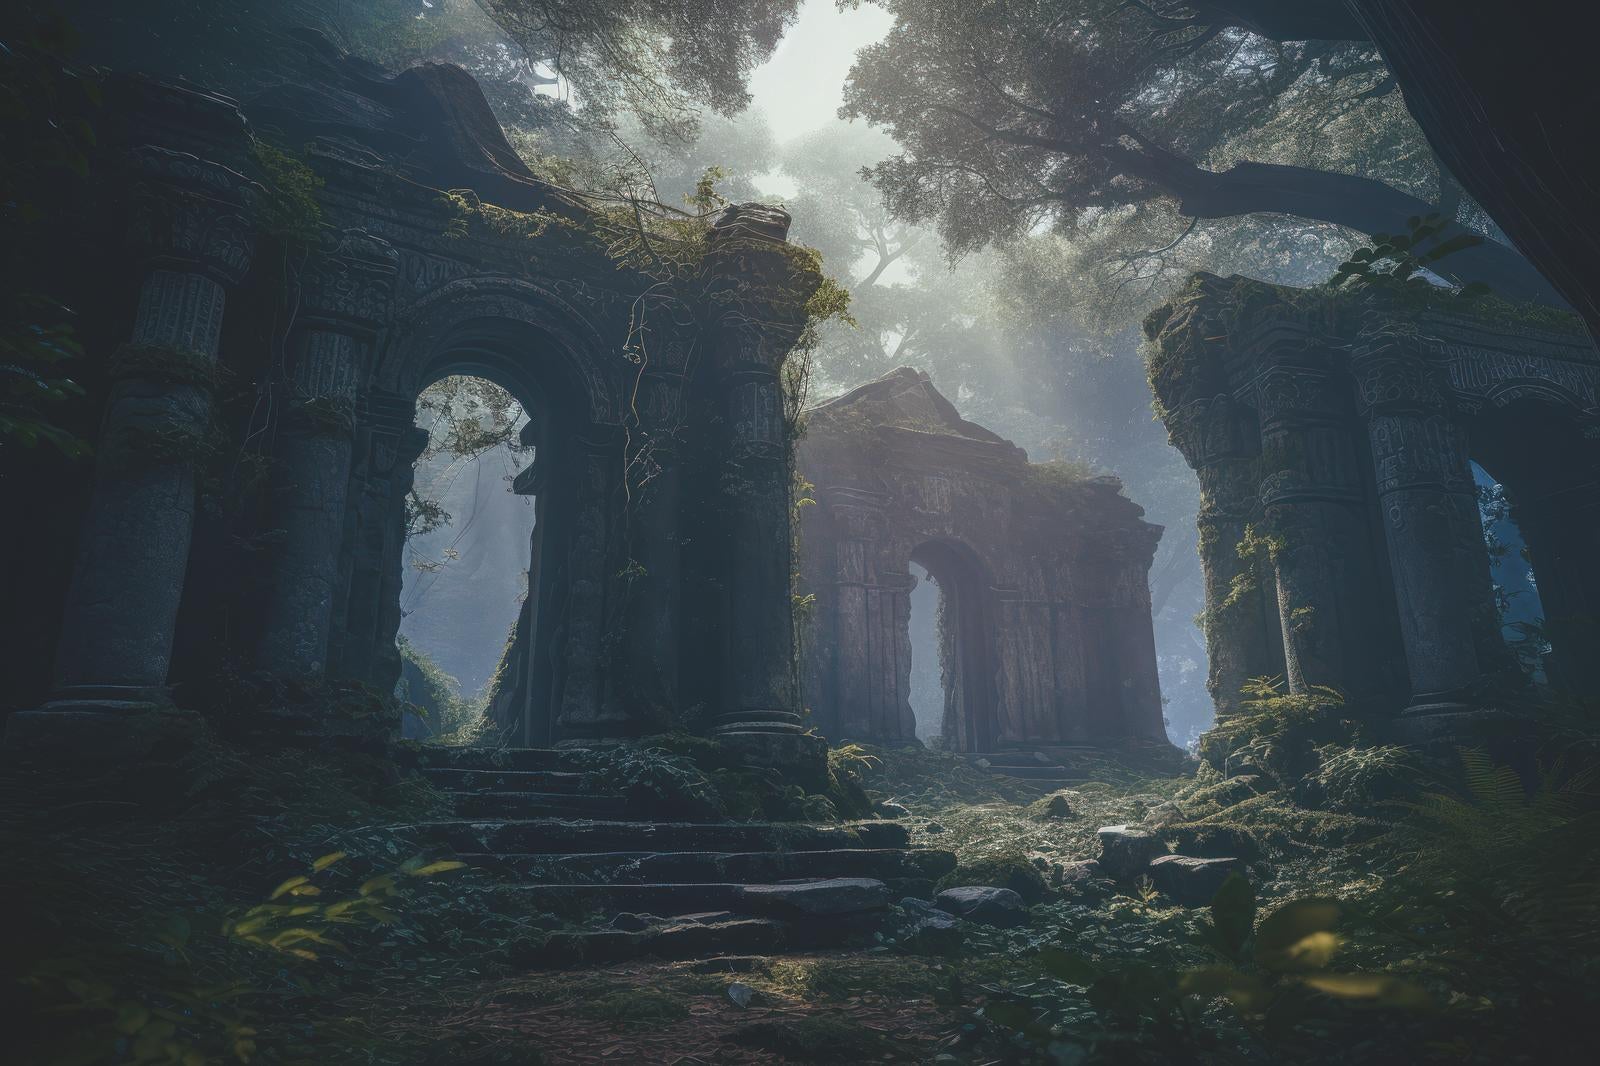 「ジャングルの秘境と古代文明の扉」の写真